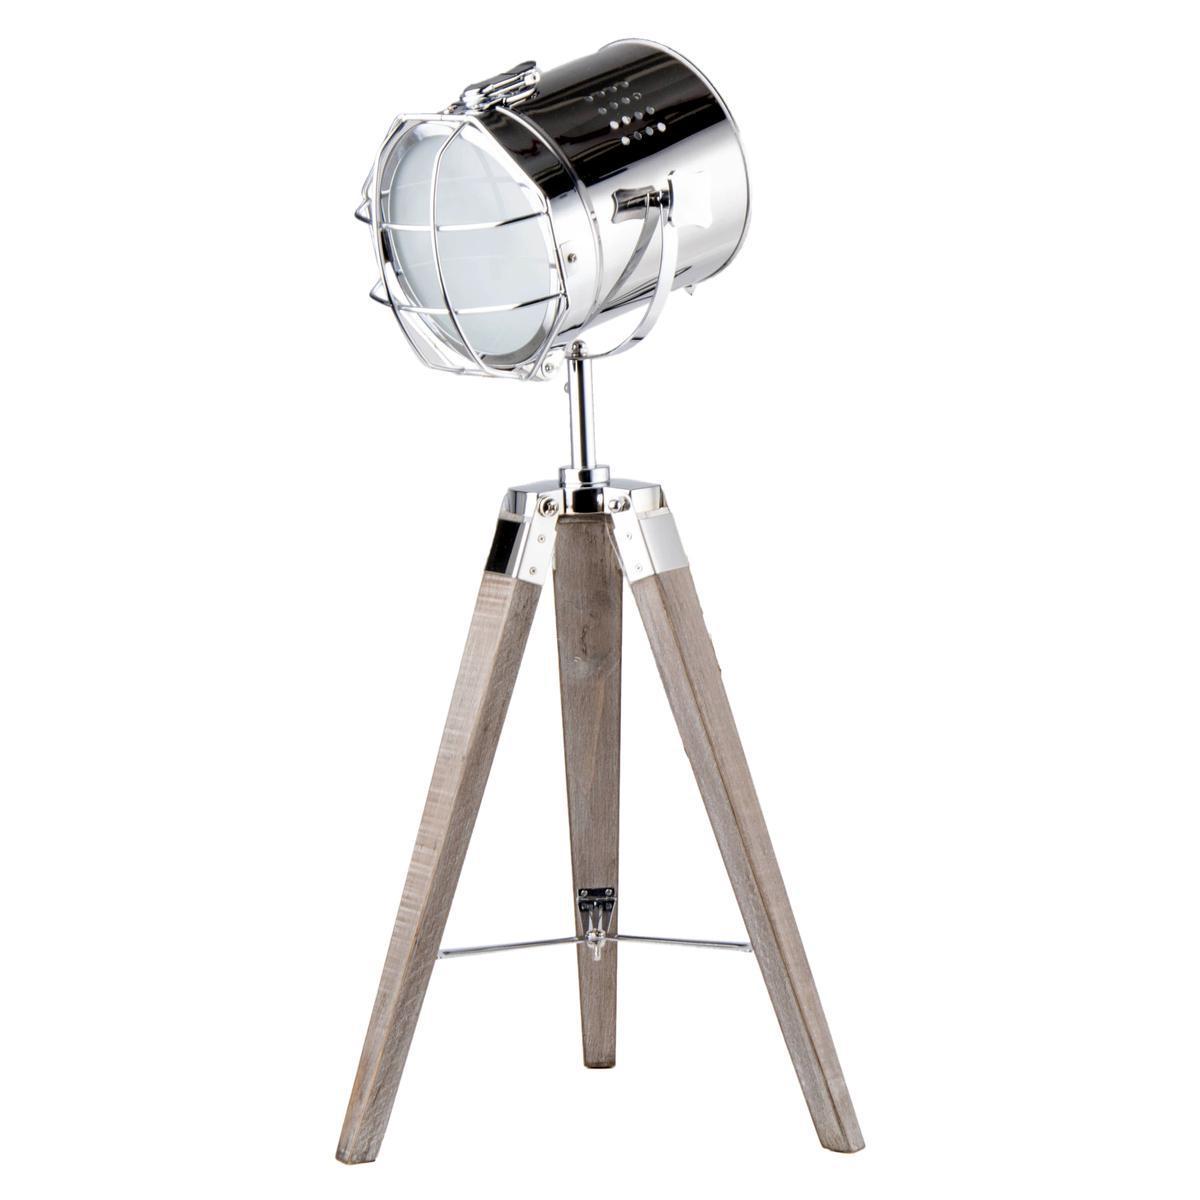 Lampe à poser projecteur - Pin et acier - 30 x 30 x H 67 cm - Marron et gris